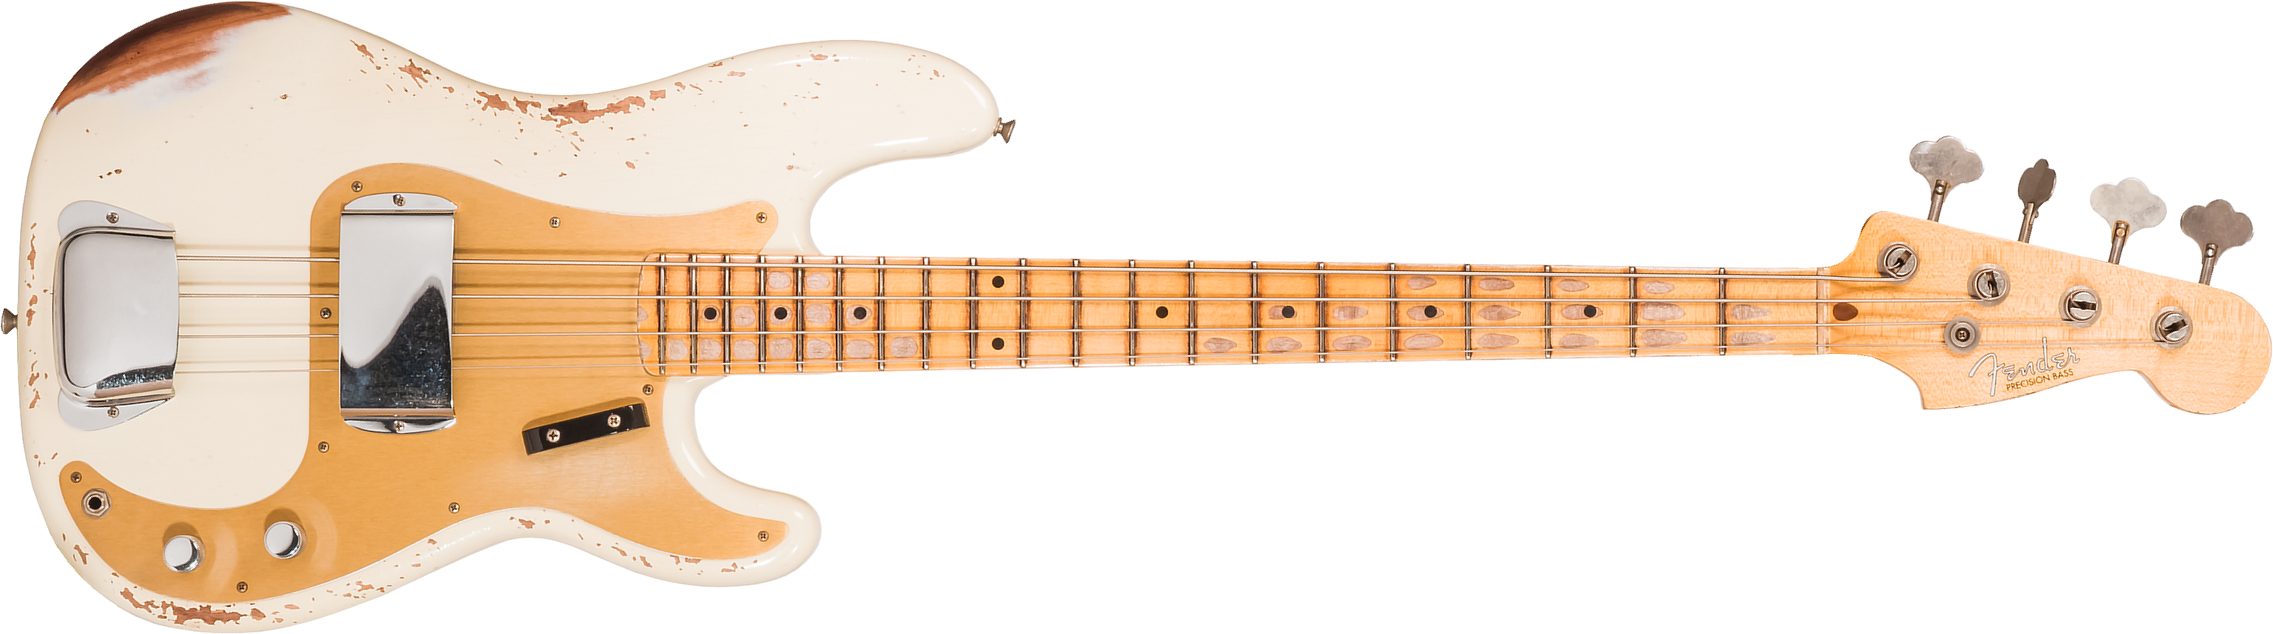 Fender Custom Shop Precision Bass 1958 Mn #cz569181 - Heavy Relic Vintage White - Basse Électrique Solid Body - Main picture